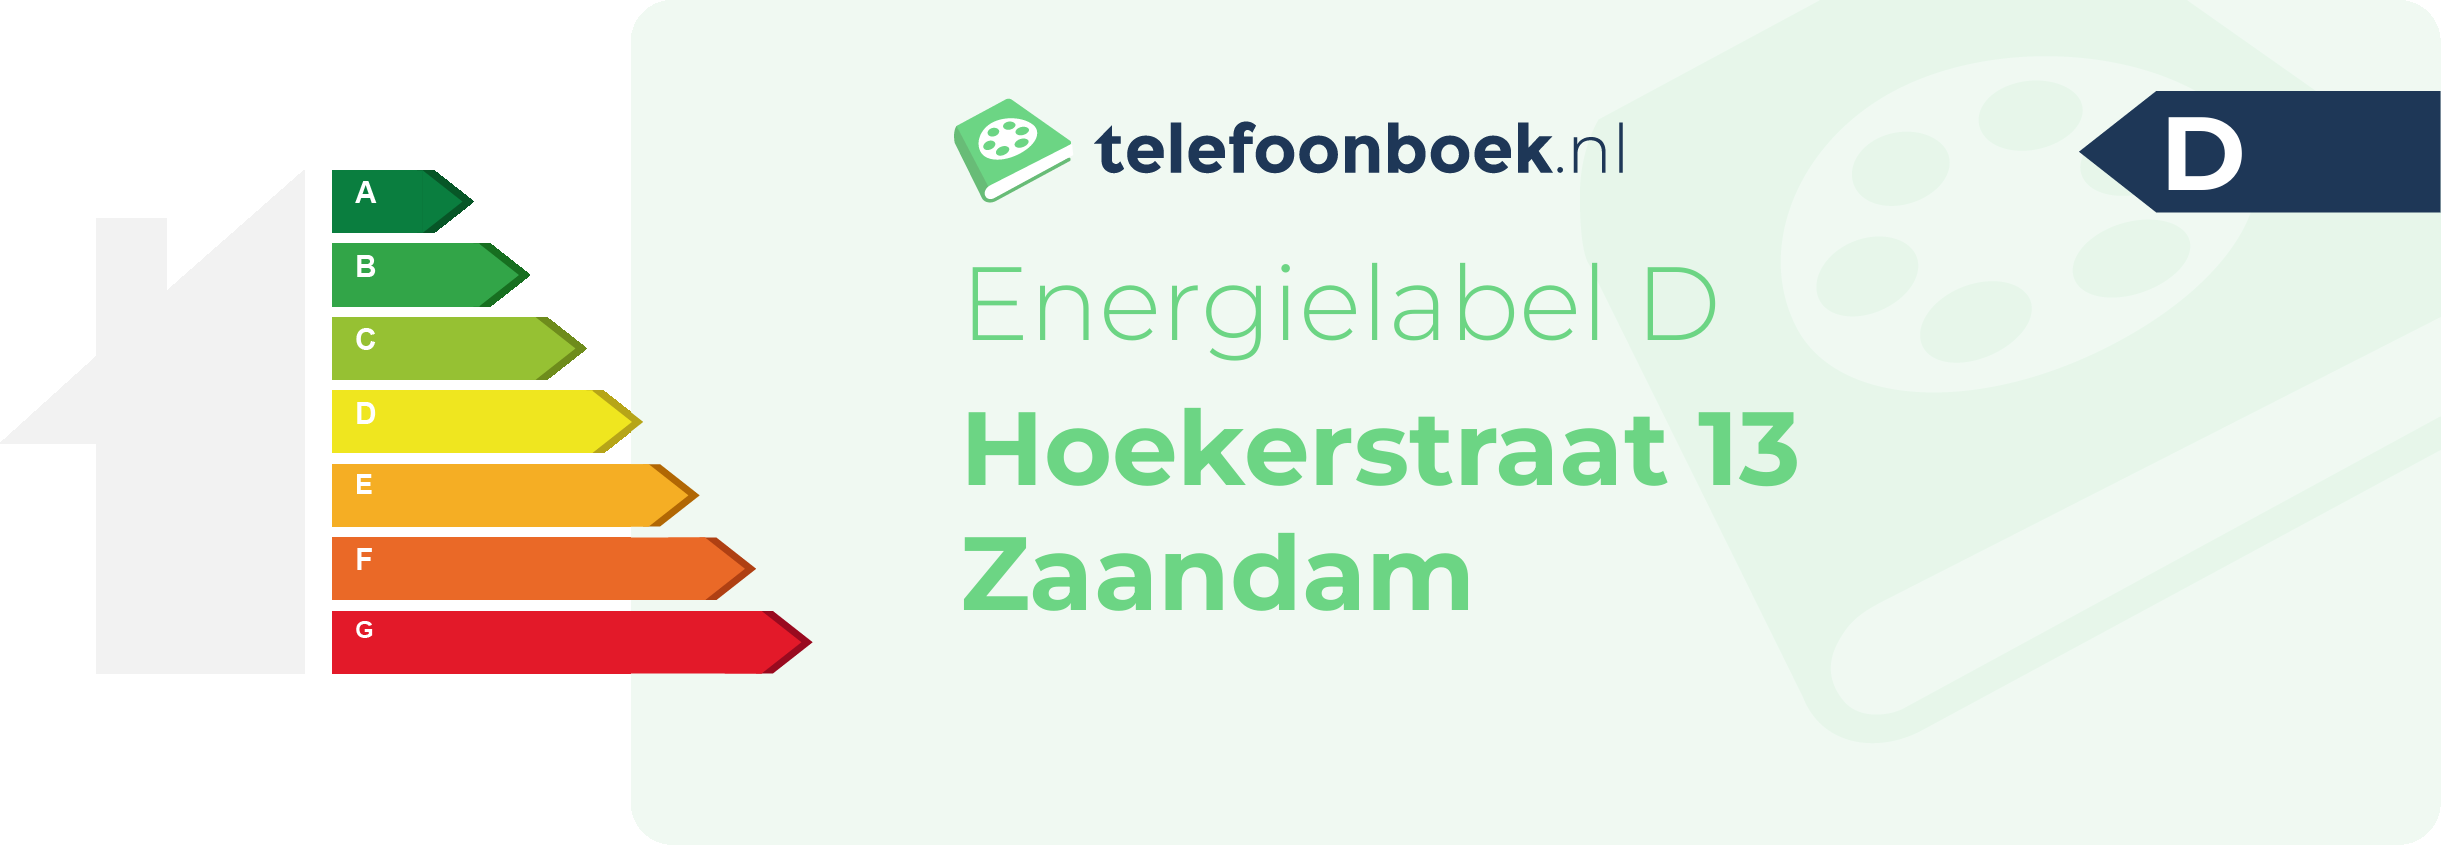 Energielabel Hoekerstraat 13 Zaandam